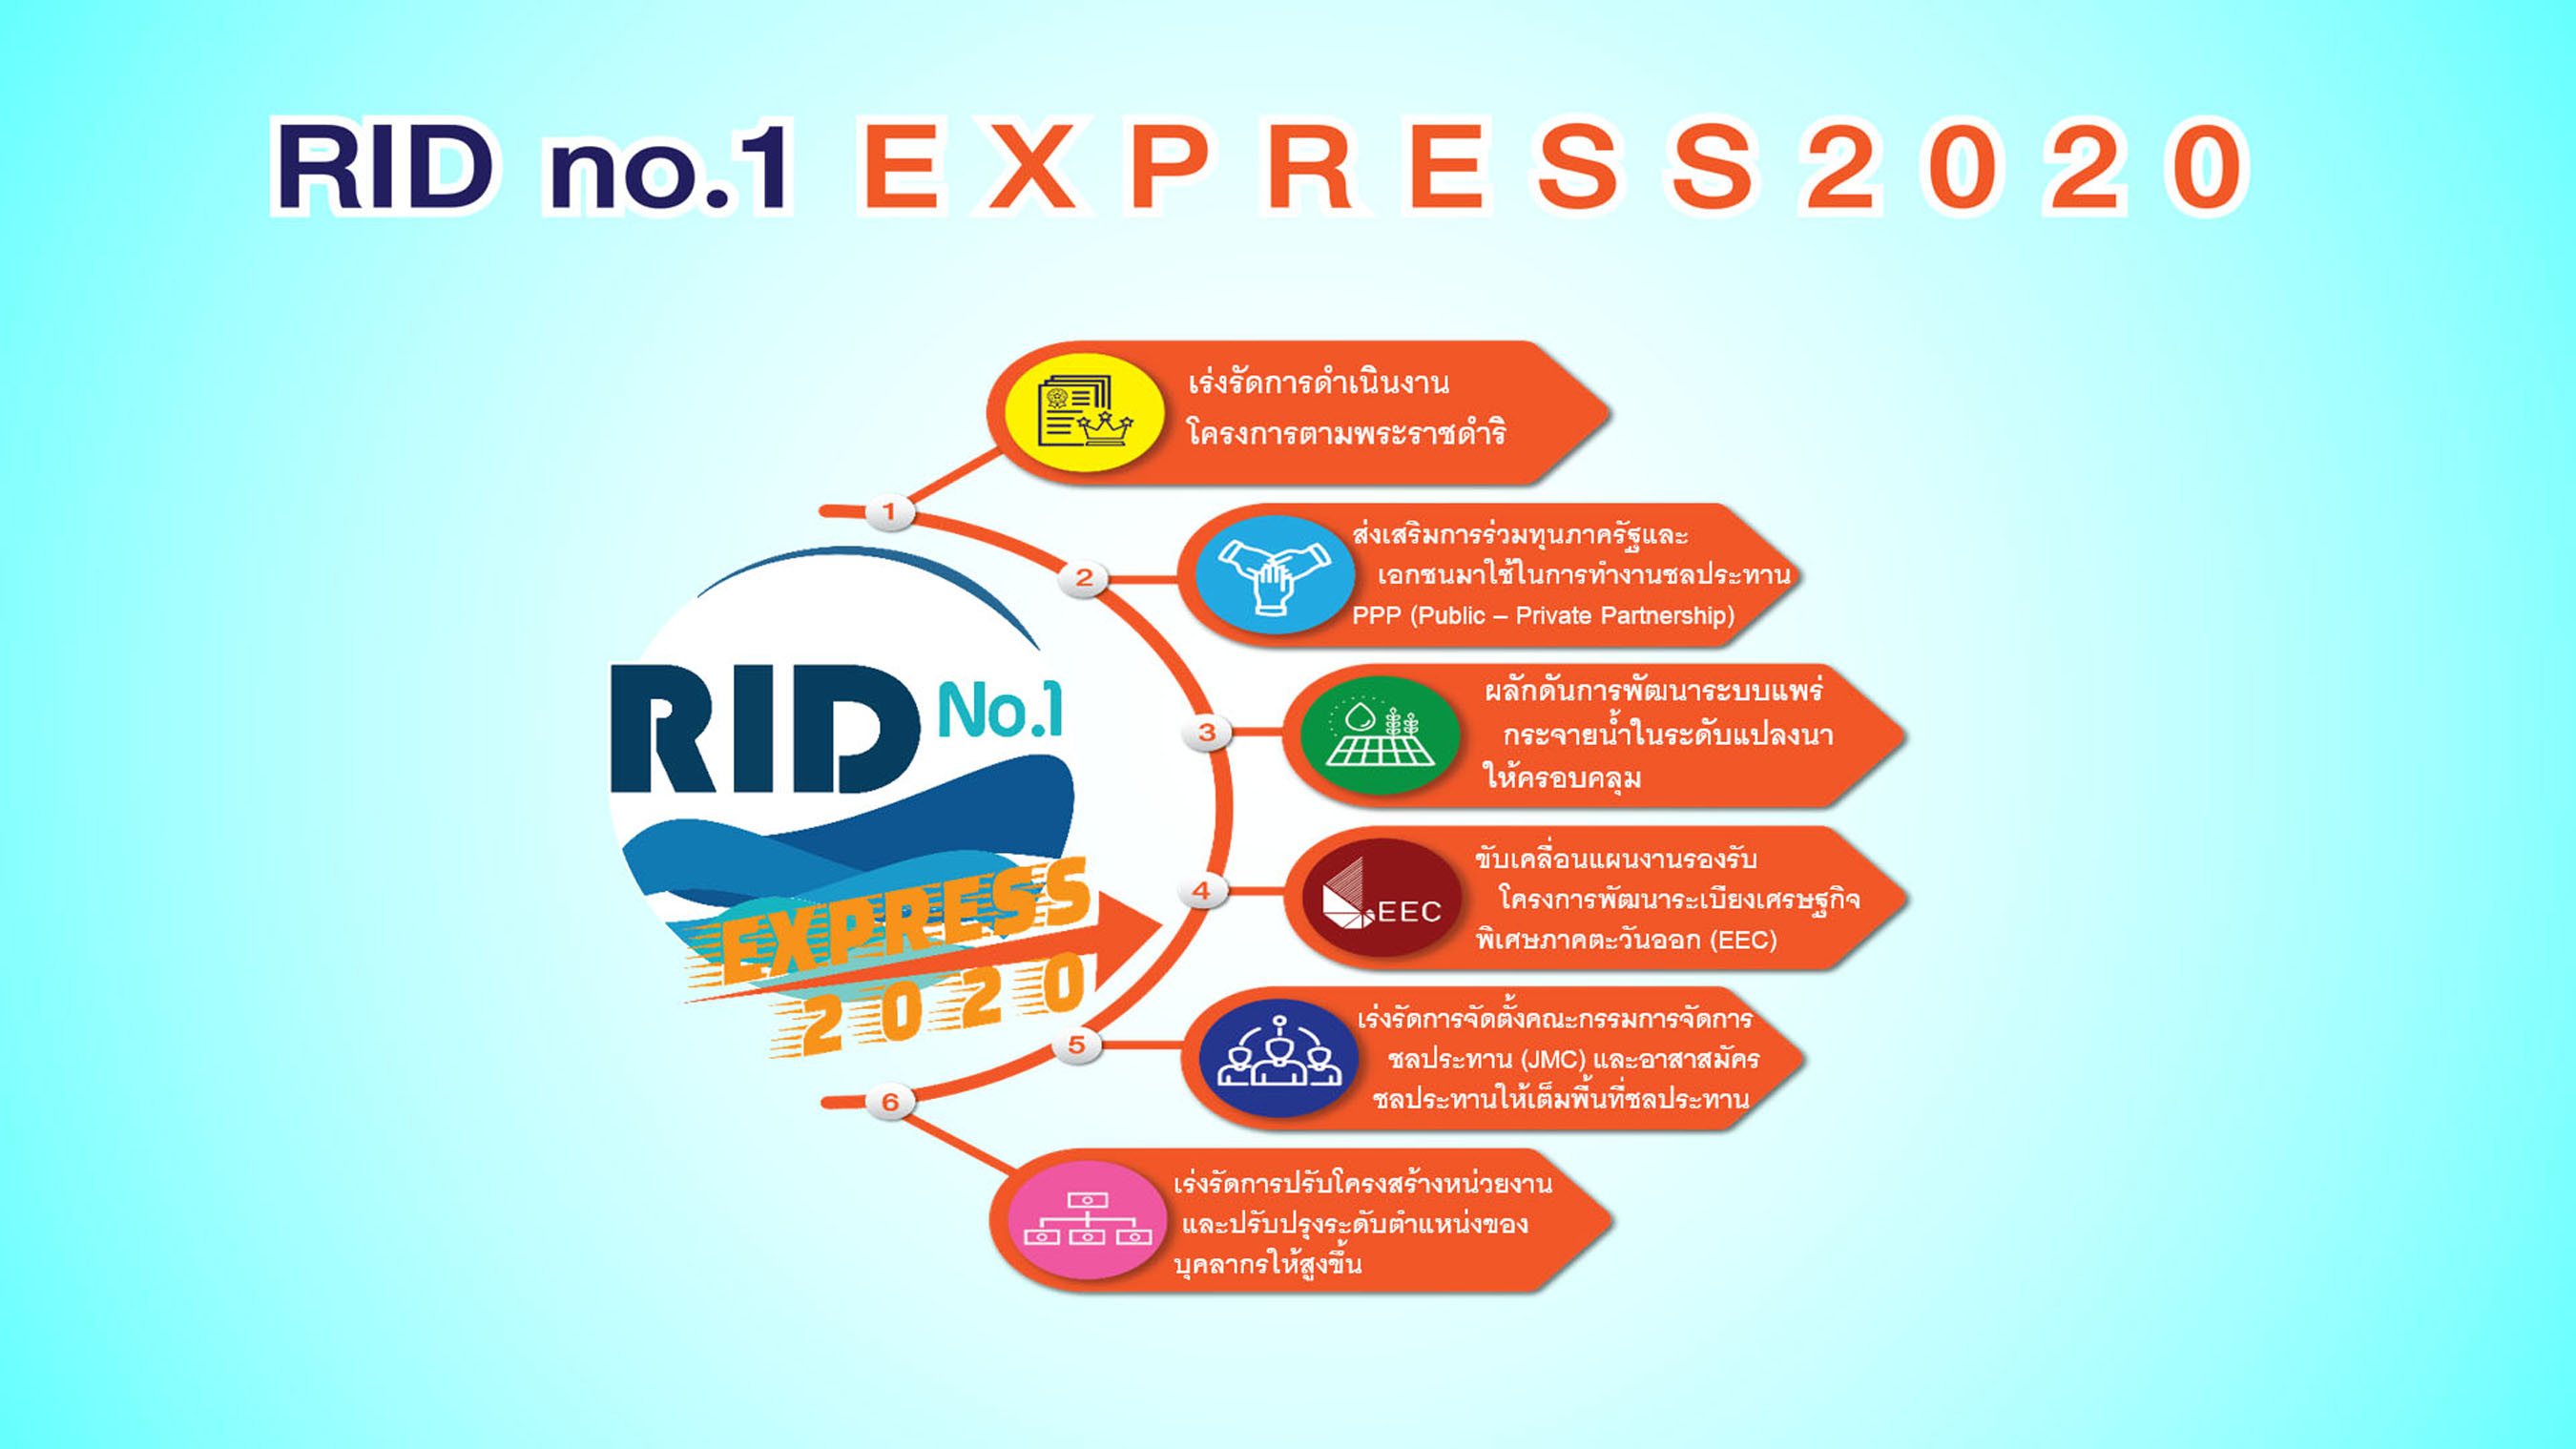 กรมชลประทาน ชูแนวทาง “RID No.1 Express 2020” เดินหน้าสร้างความมั่นคงทางน้ำ ด้วยภารกิจเร่งด่วน 6 ด้าน